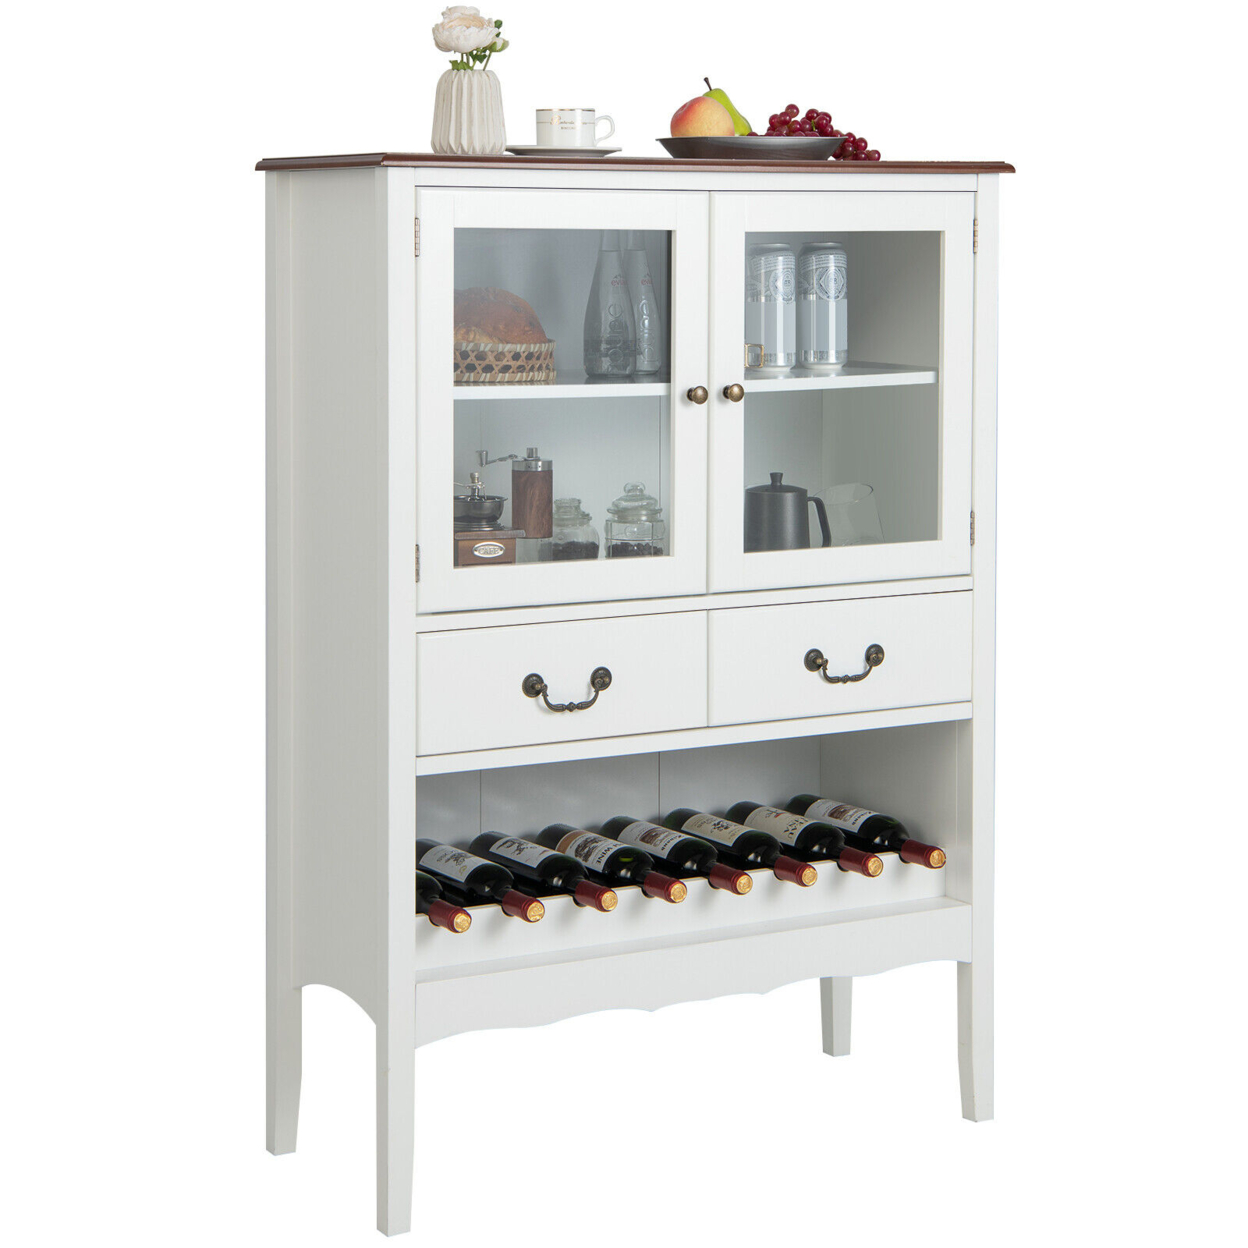 2-Door Liquor Coffee Bar Cabinet Freestanding Buffet Sideboard Wine Rack Drawers